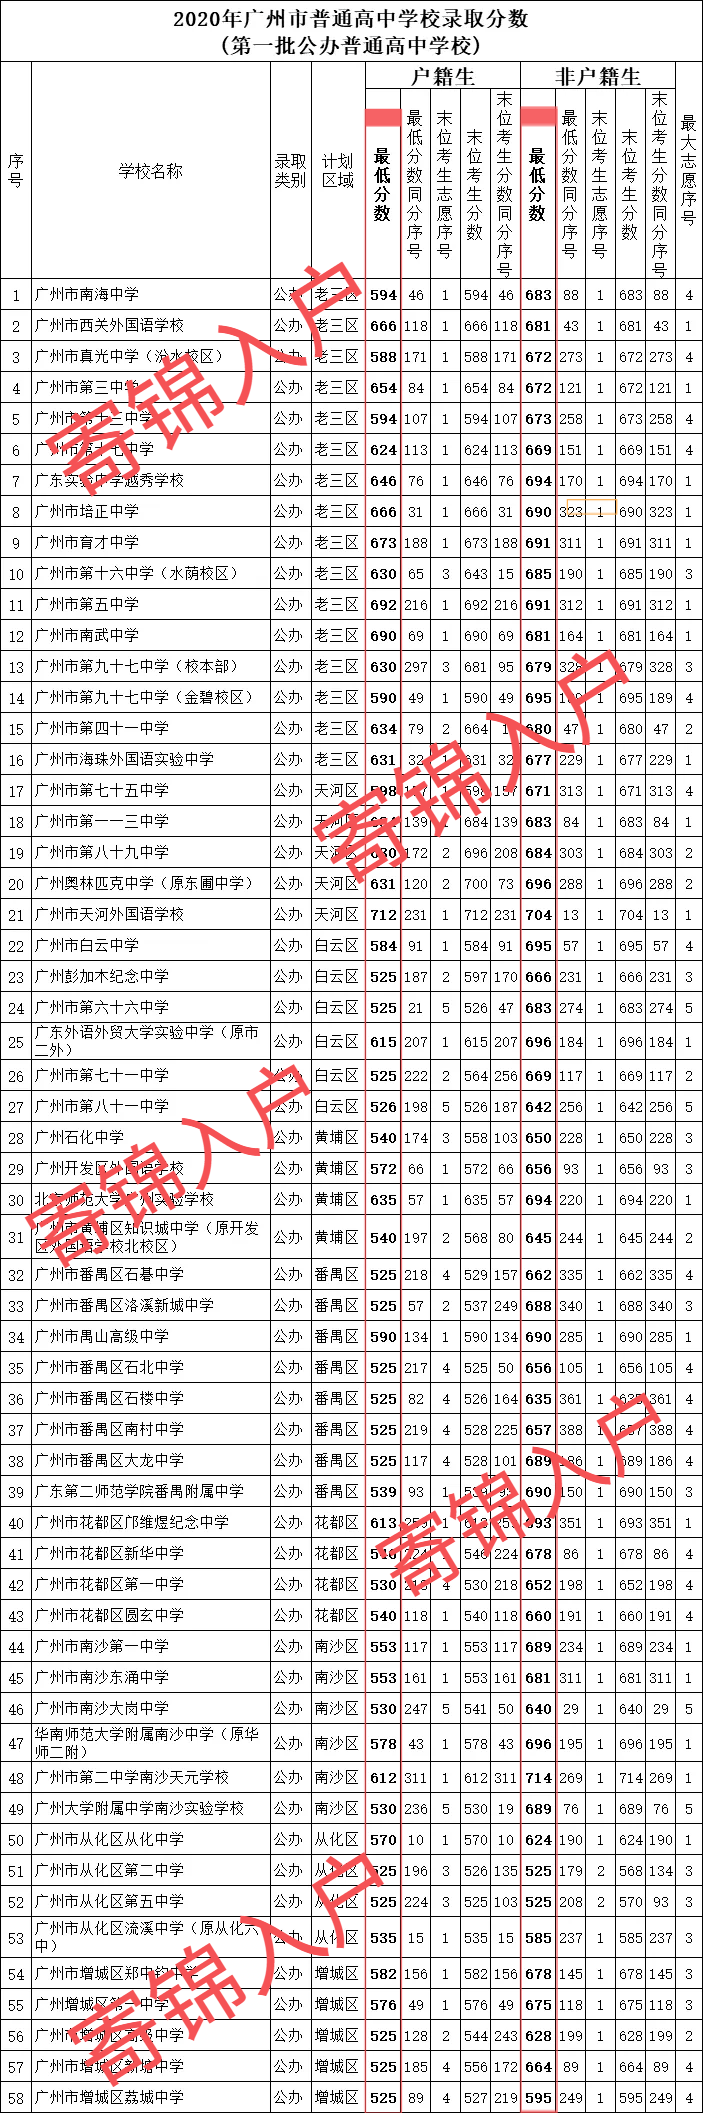 下图为2020广州普高录取分数线